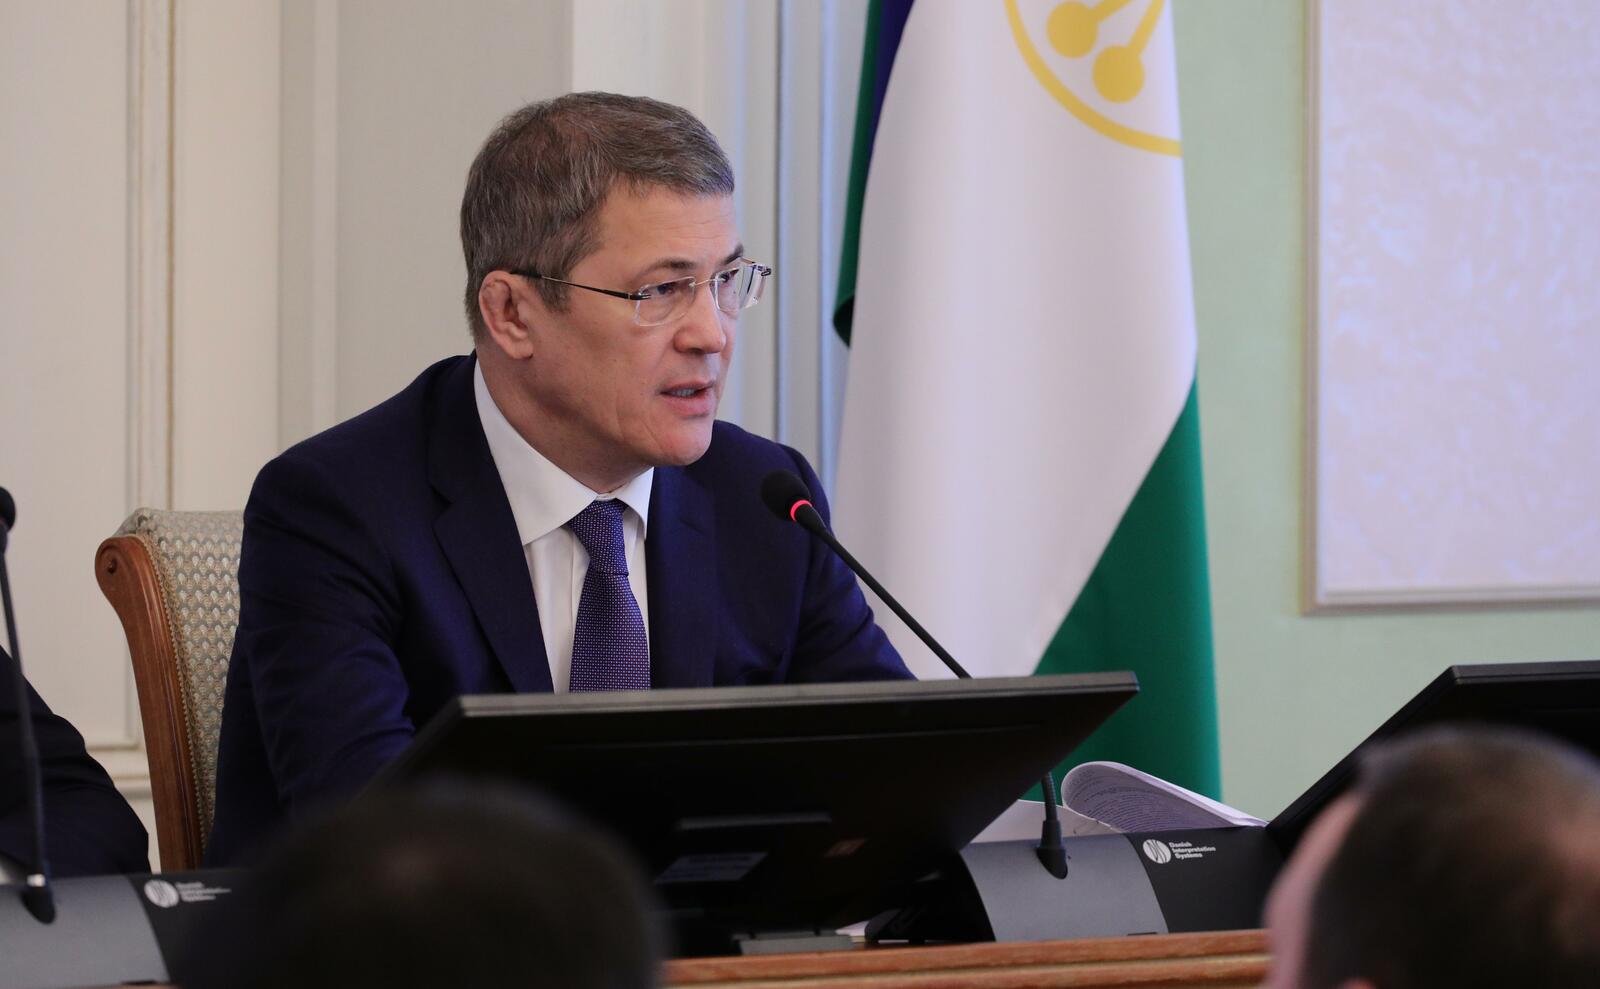 Глава Башкирии Радий Хабиров дал поручение экономическому блоку правительства РБ проработать вопросы поддержки бизнеса